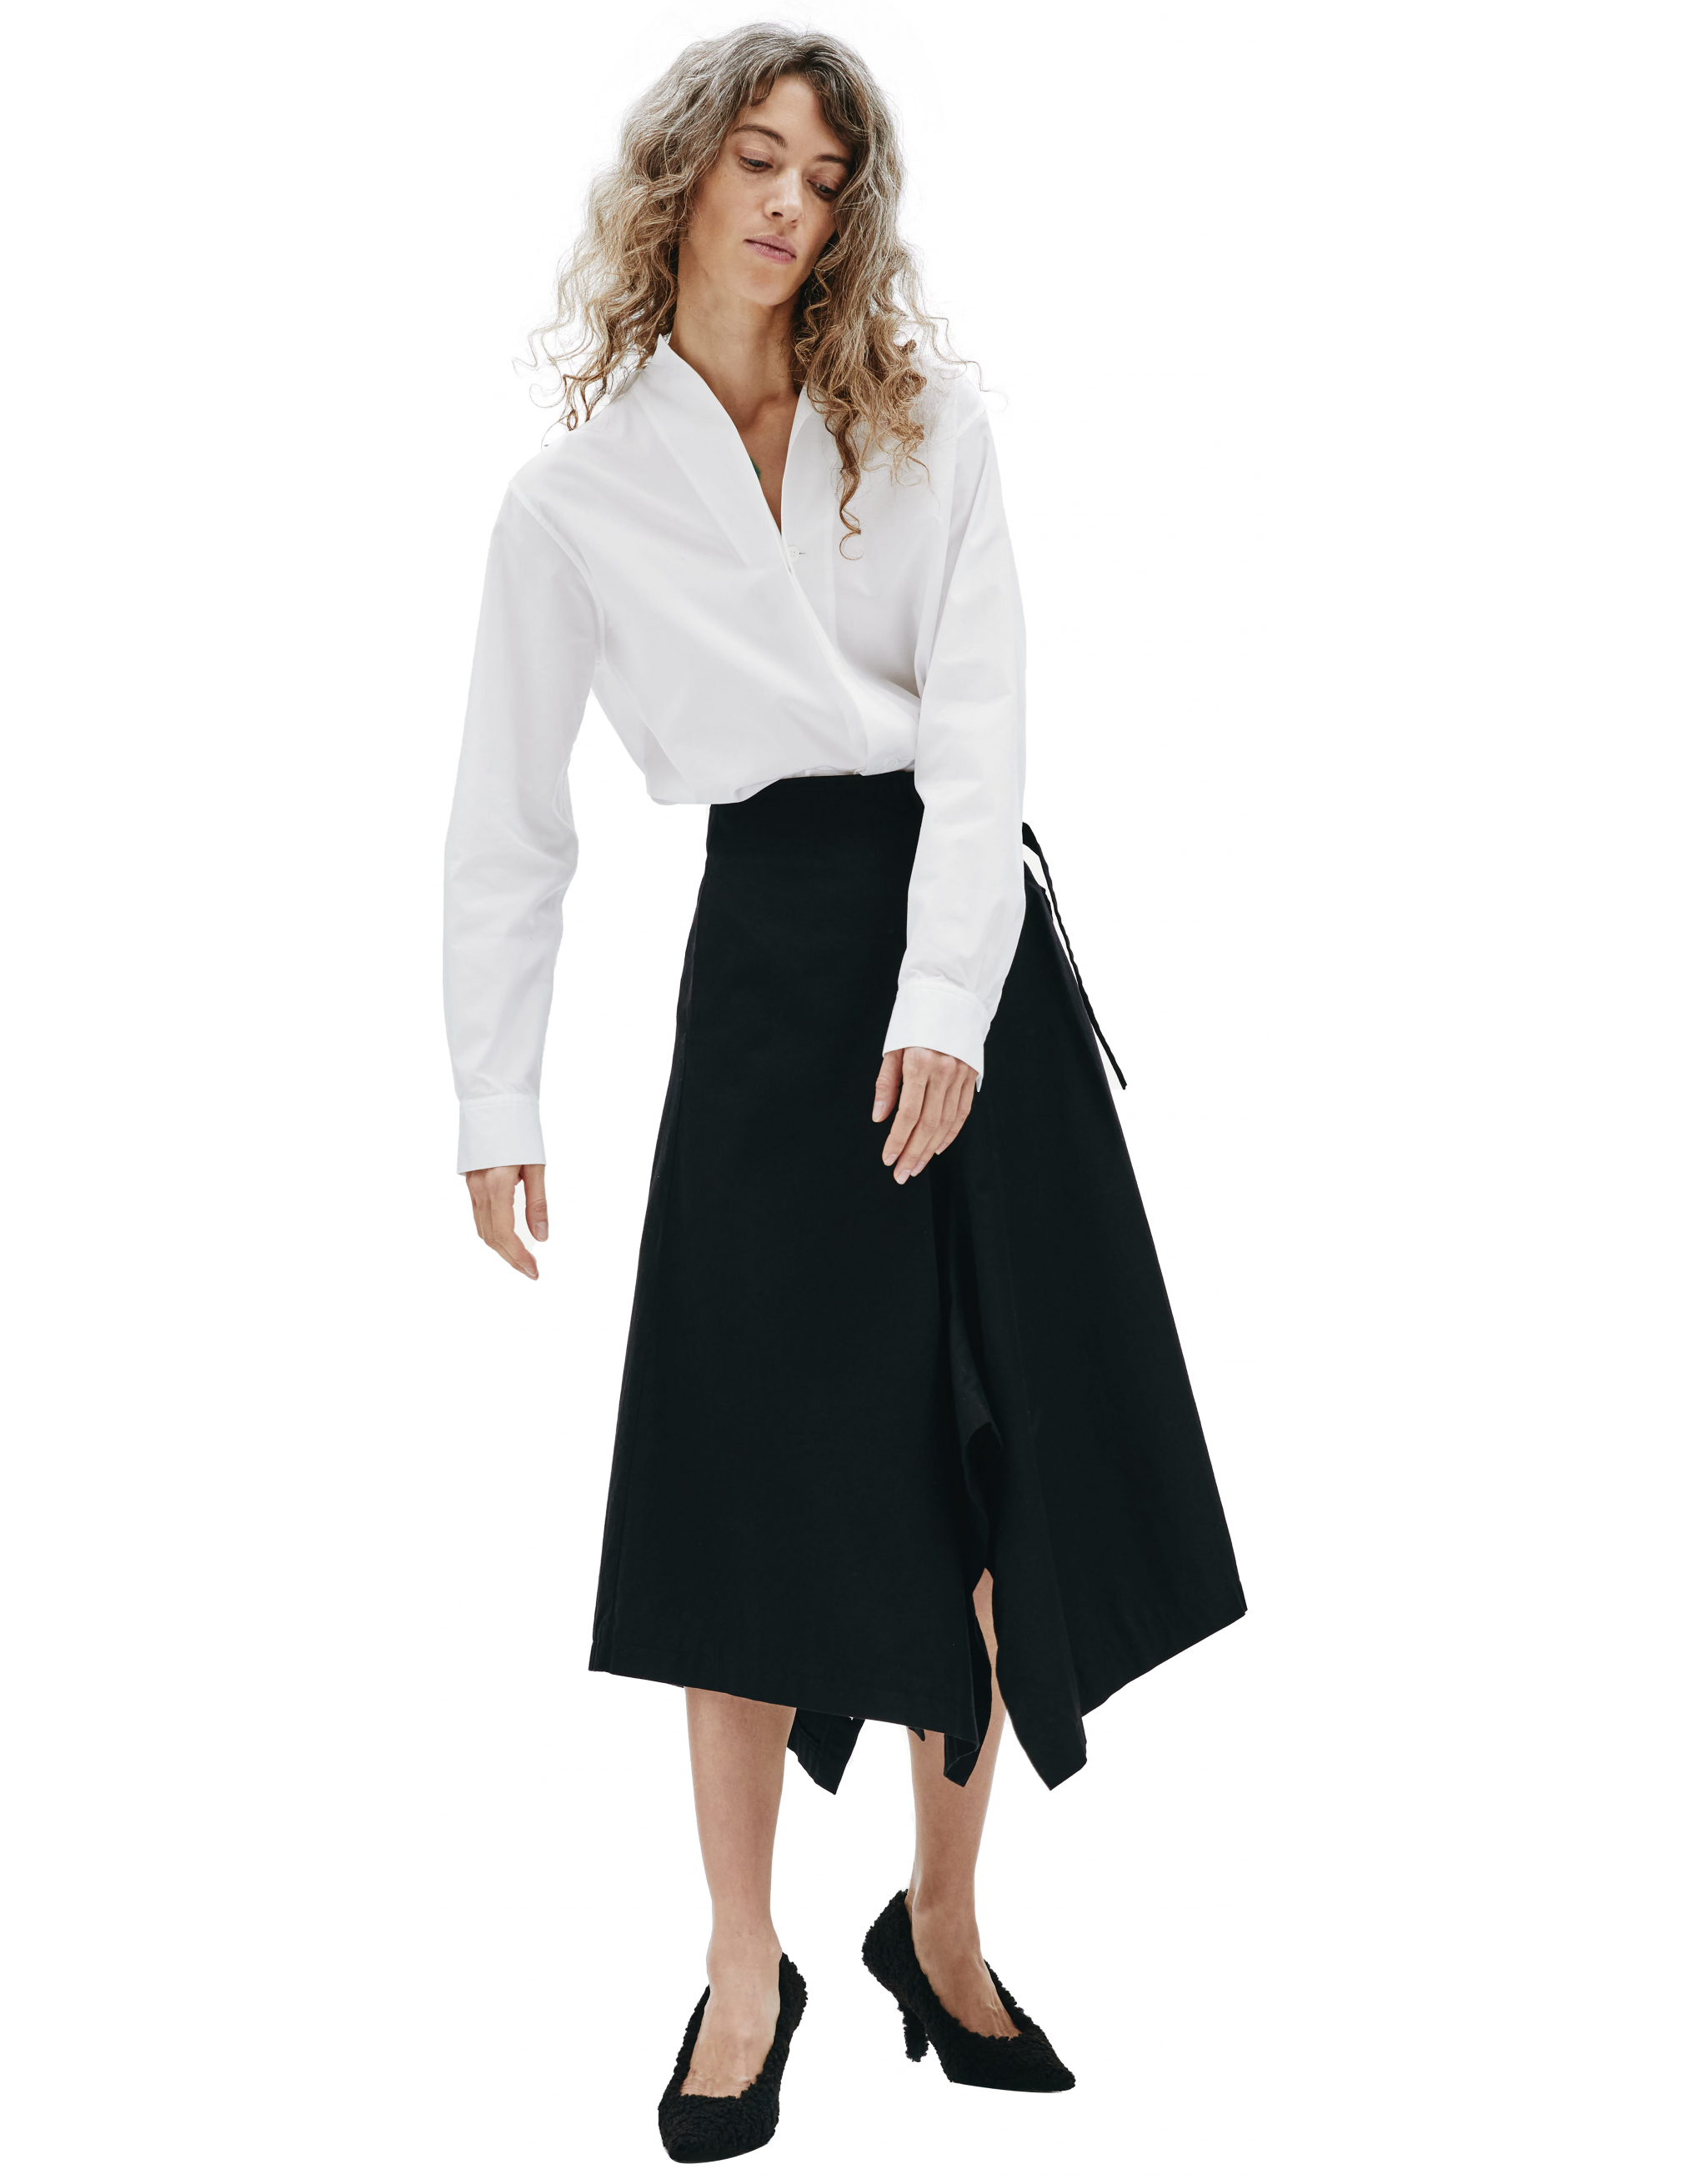 Асимметричная юбка с запахом Ys YX-S80-002-2, размер 3;1 - фото 1